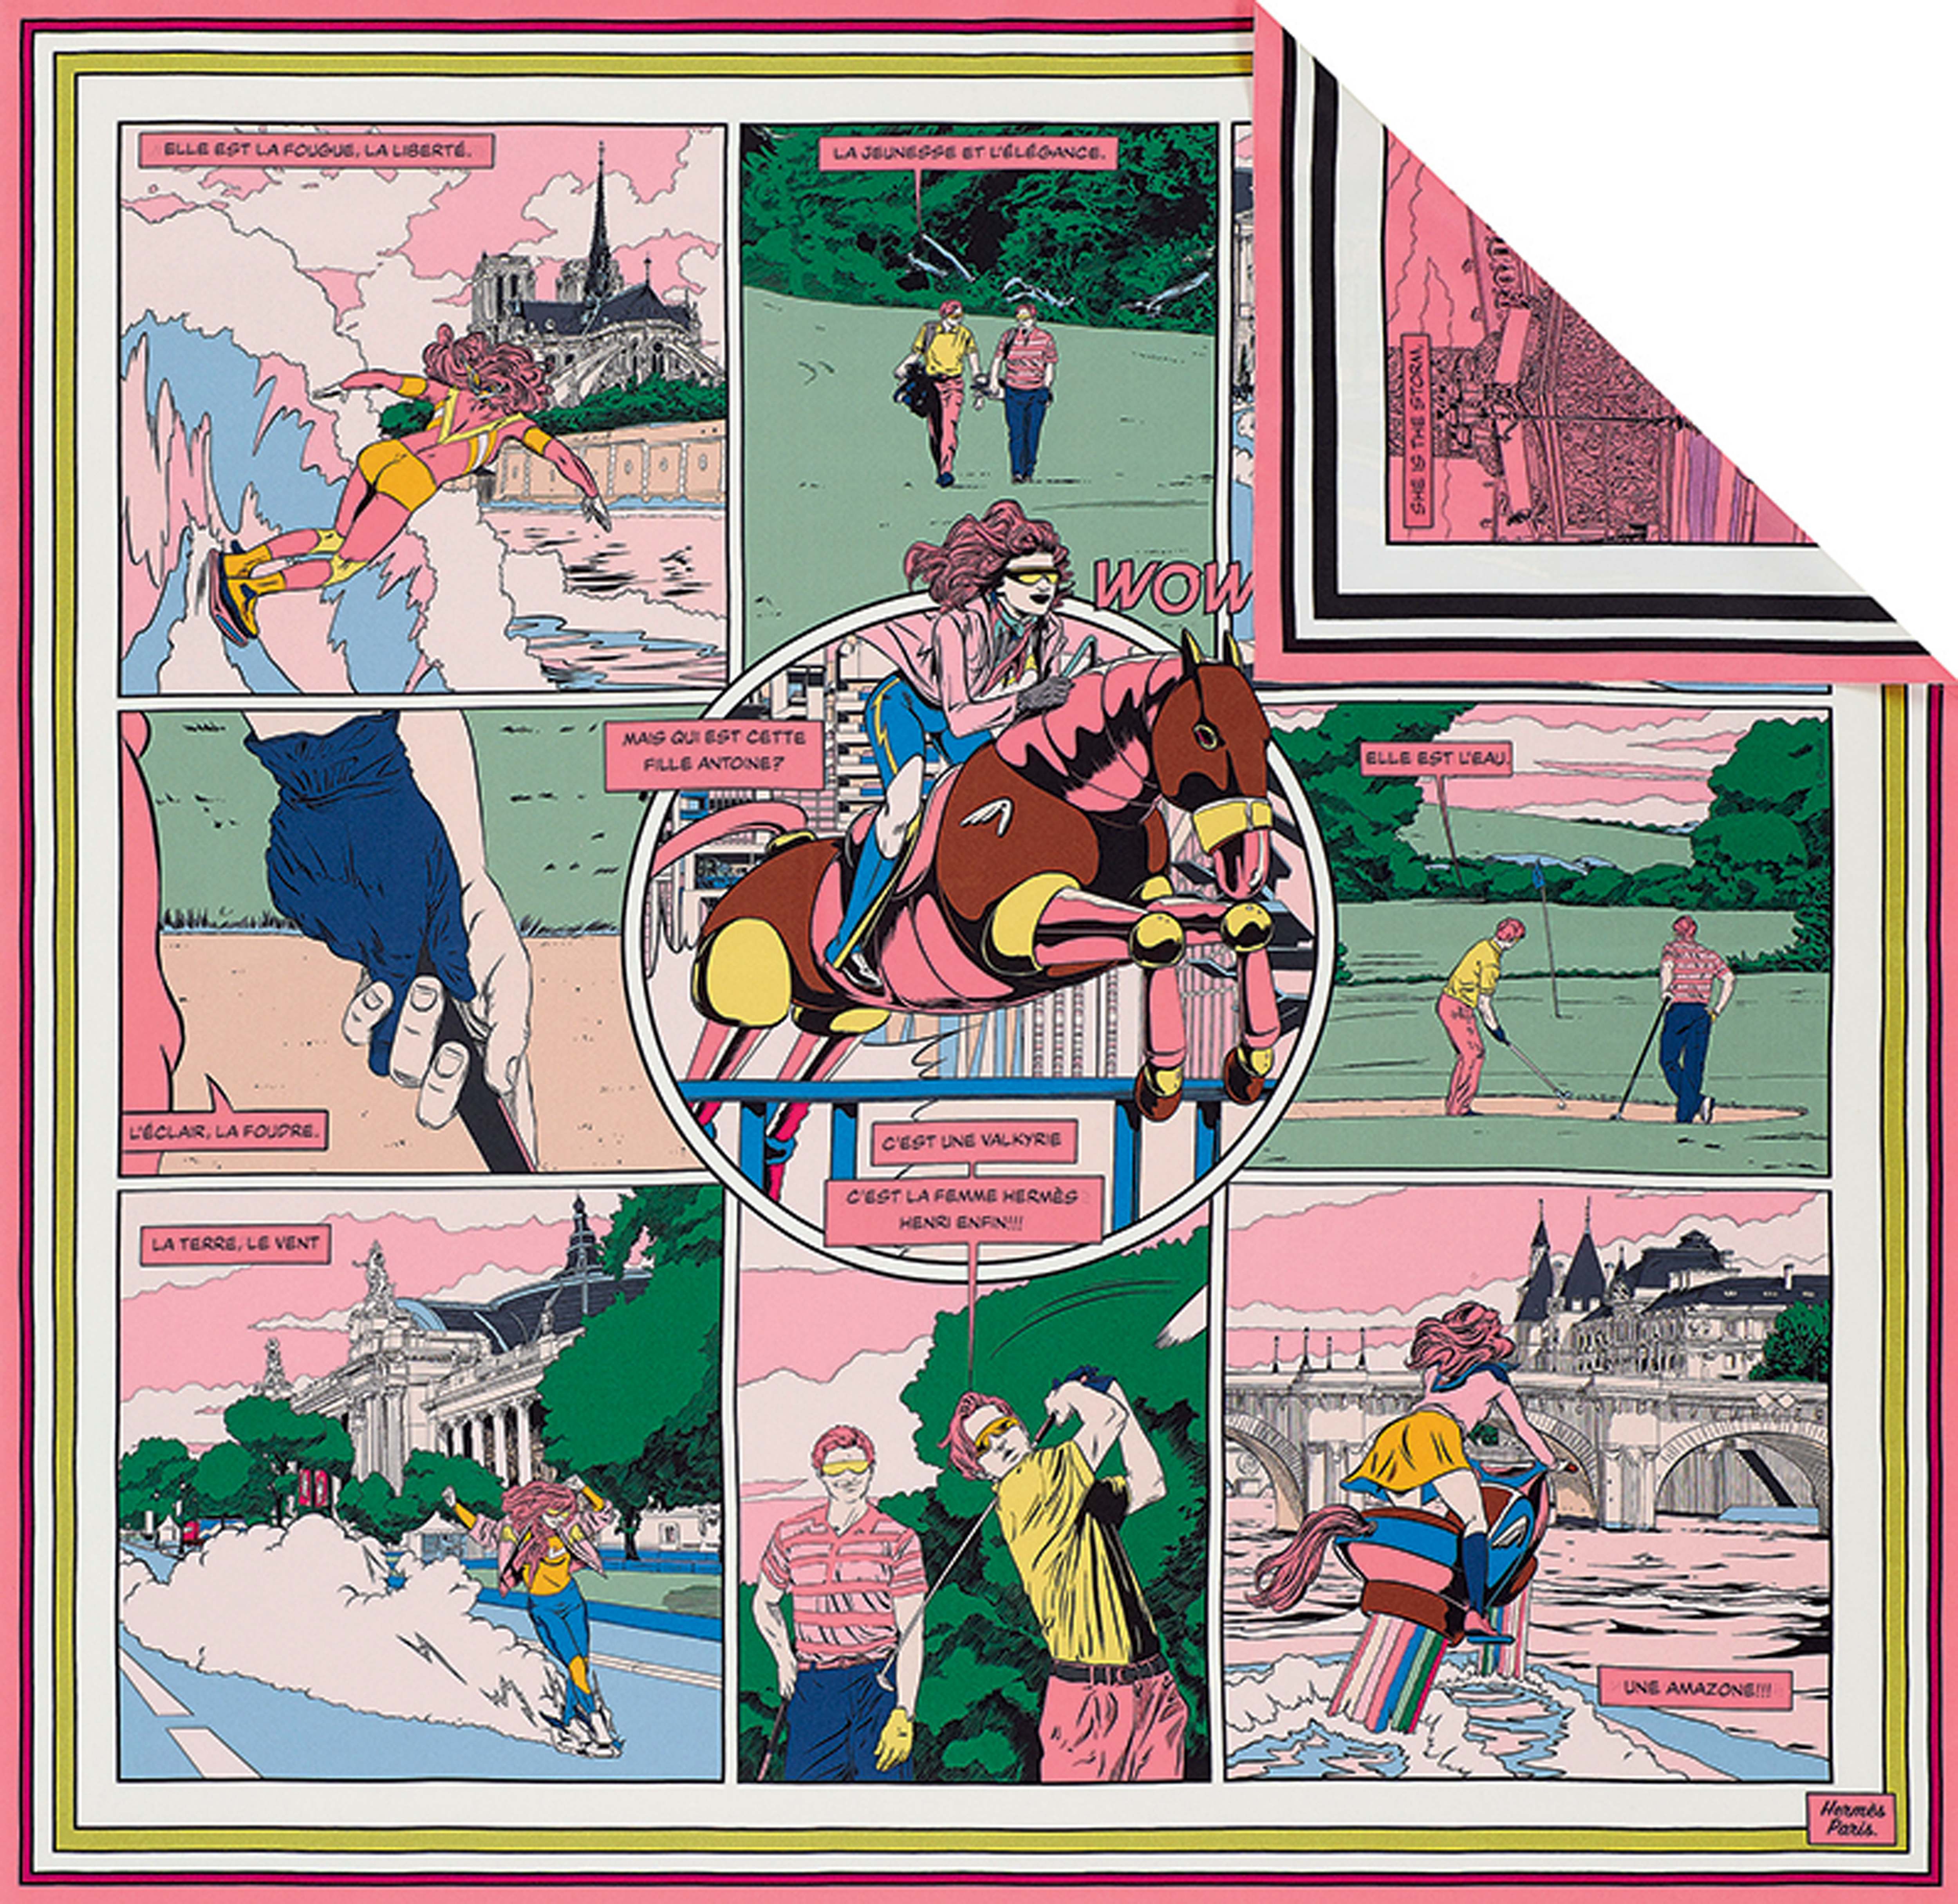 這組由法國插畫家Ugo Bienvenu創作的幽默漫畫，讓置身任何處境都熱情無畏的Hermès女郎化身成矚目焦點。漫畫在雙面絲巾上以兩種手法呈現，其中一面印上彩色的法語版本，另一面則以單色印上英語版本。